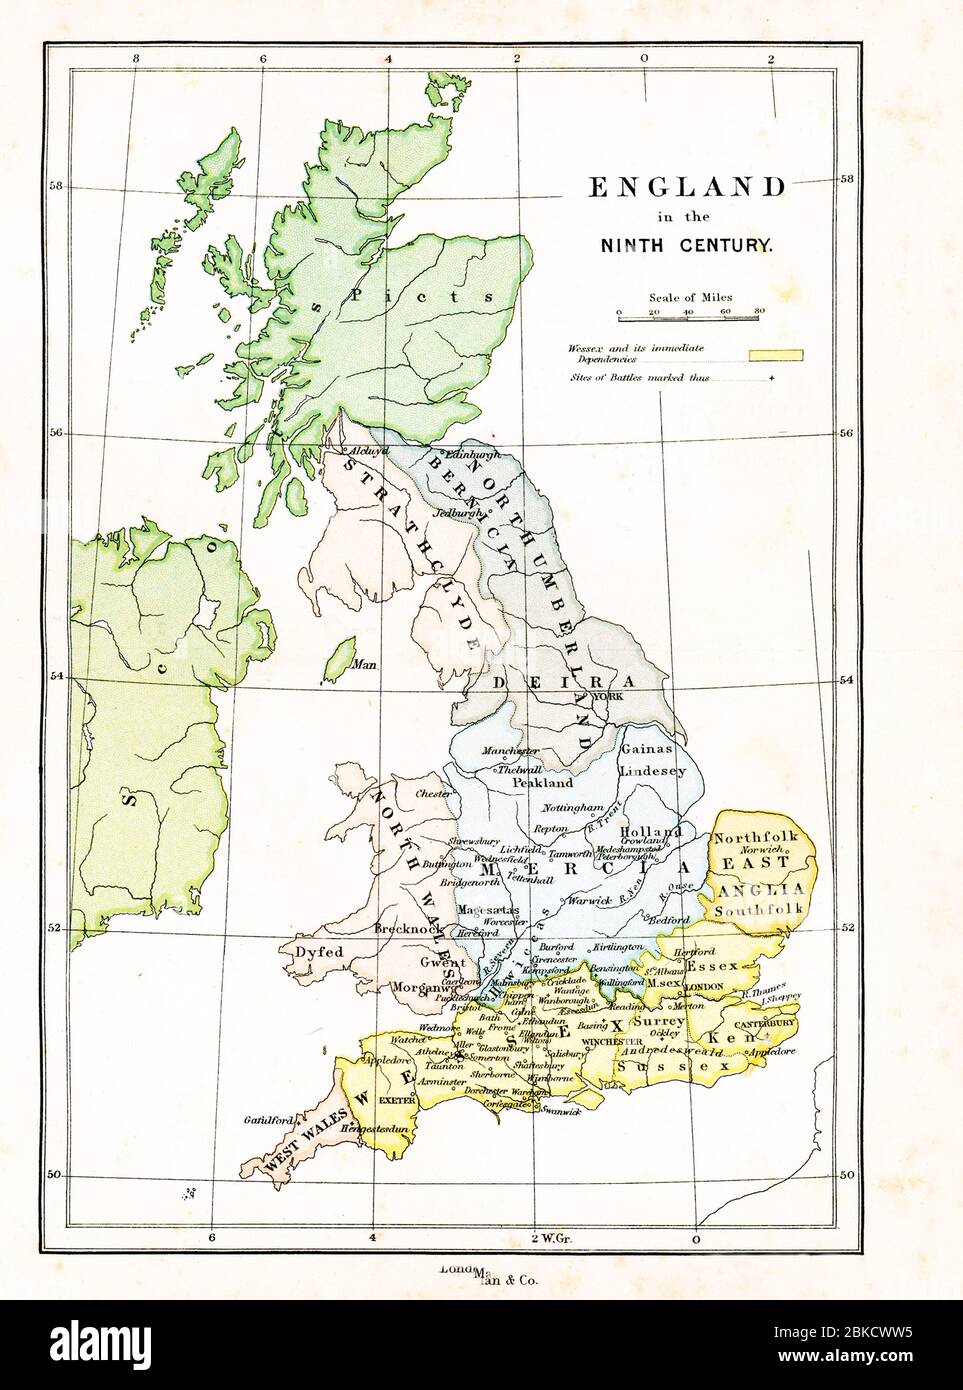 Questa mappa mostra la Gran Bretagna nel IX secolo d.C. la leggenda ha giallo come rappresentante Wessex e le sue dipendenze immediate. Un segno più segna il luogo delle battaglie. Foto Stock